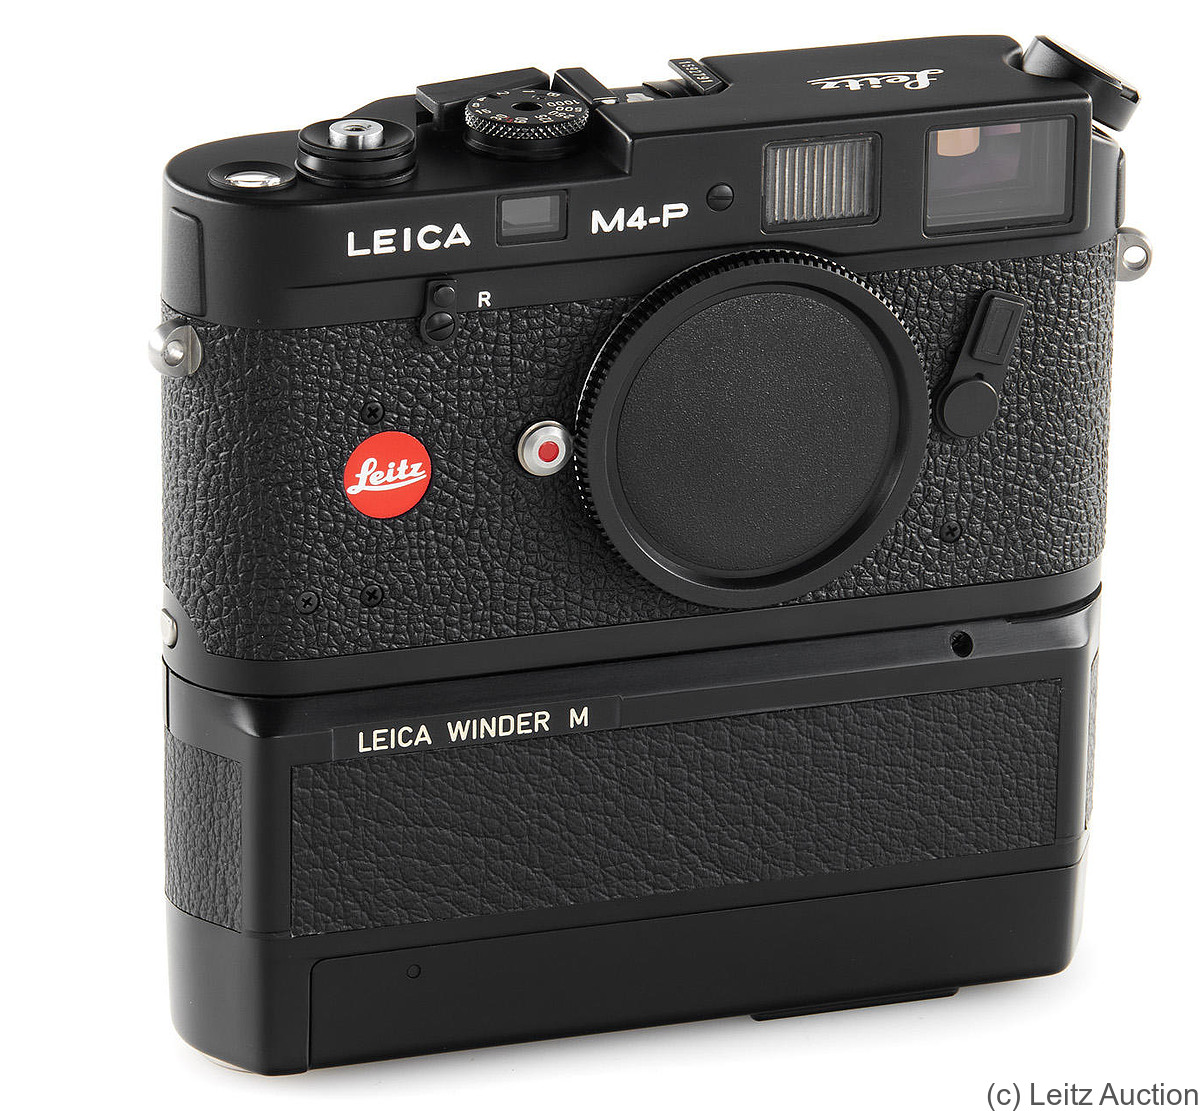 Leitz: Leica M4-P black Winder M camera